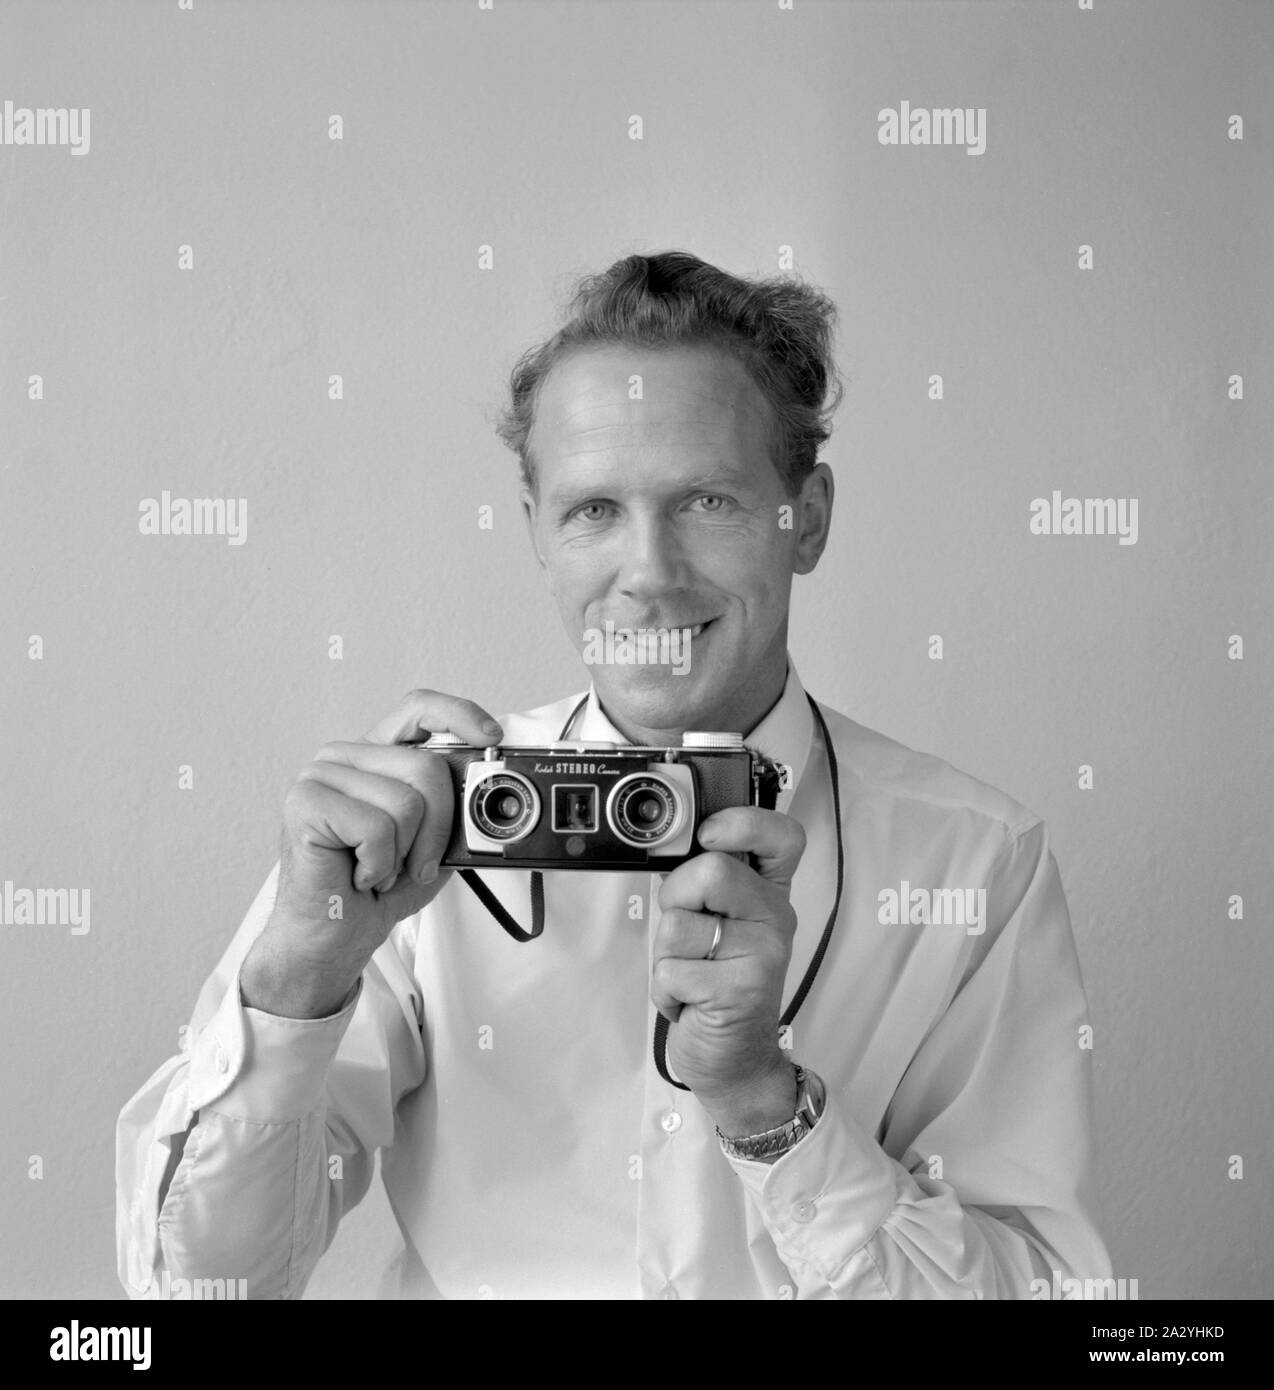 Kamera Geschichte. Ein Mann mit einem Kodak Stereo Camera. Ein 35-mm-Kamera zwischen 1954 och 1959 produziert. Die Kamera hat 2 Schüsse der Szene, und die rutschen könnte dann in speziellen Image Viewer angezeigt werden, die Tiefe und die Wirkung der Twin objektiv Fotografie zu erleben. Schweden 1955 Stockfoto